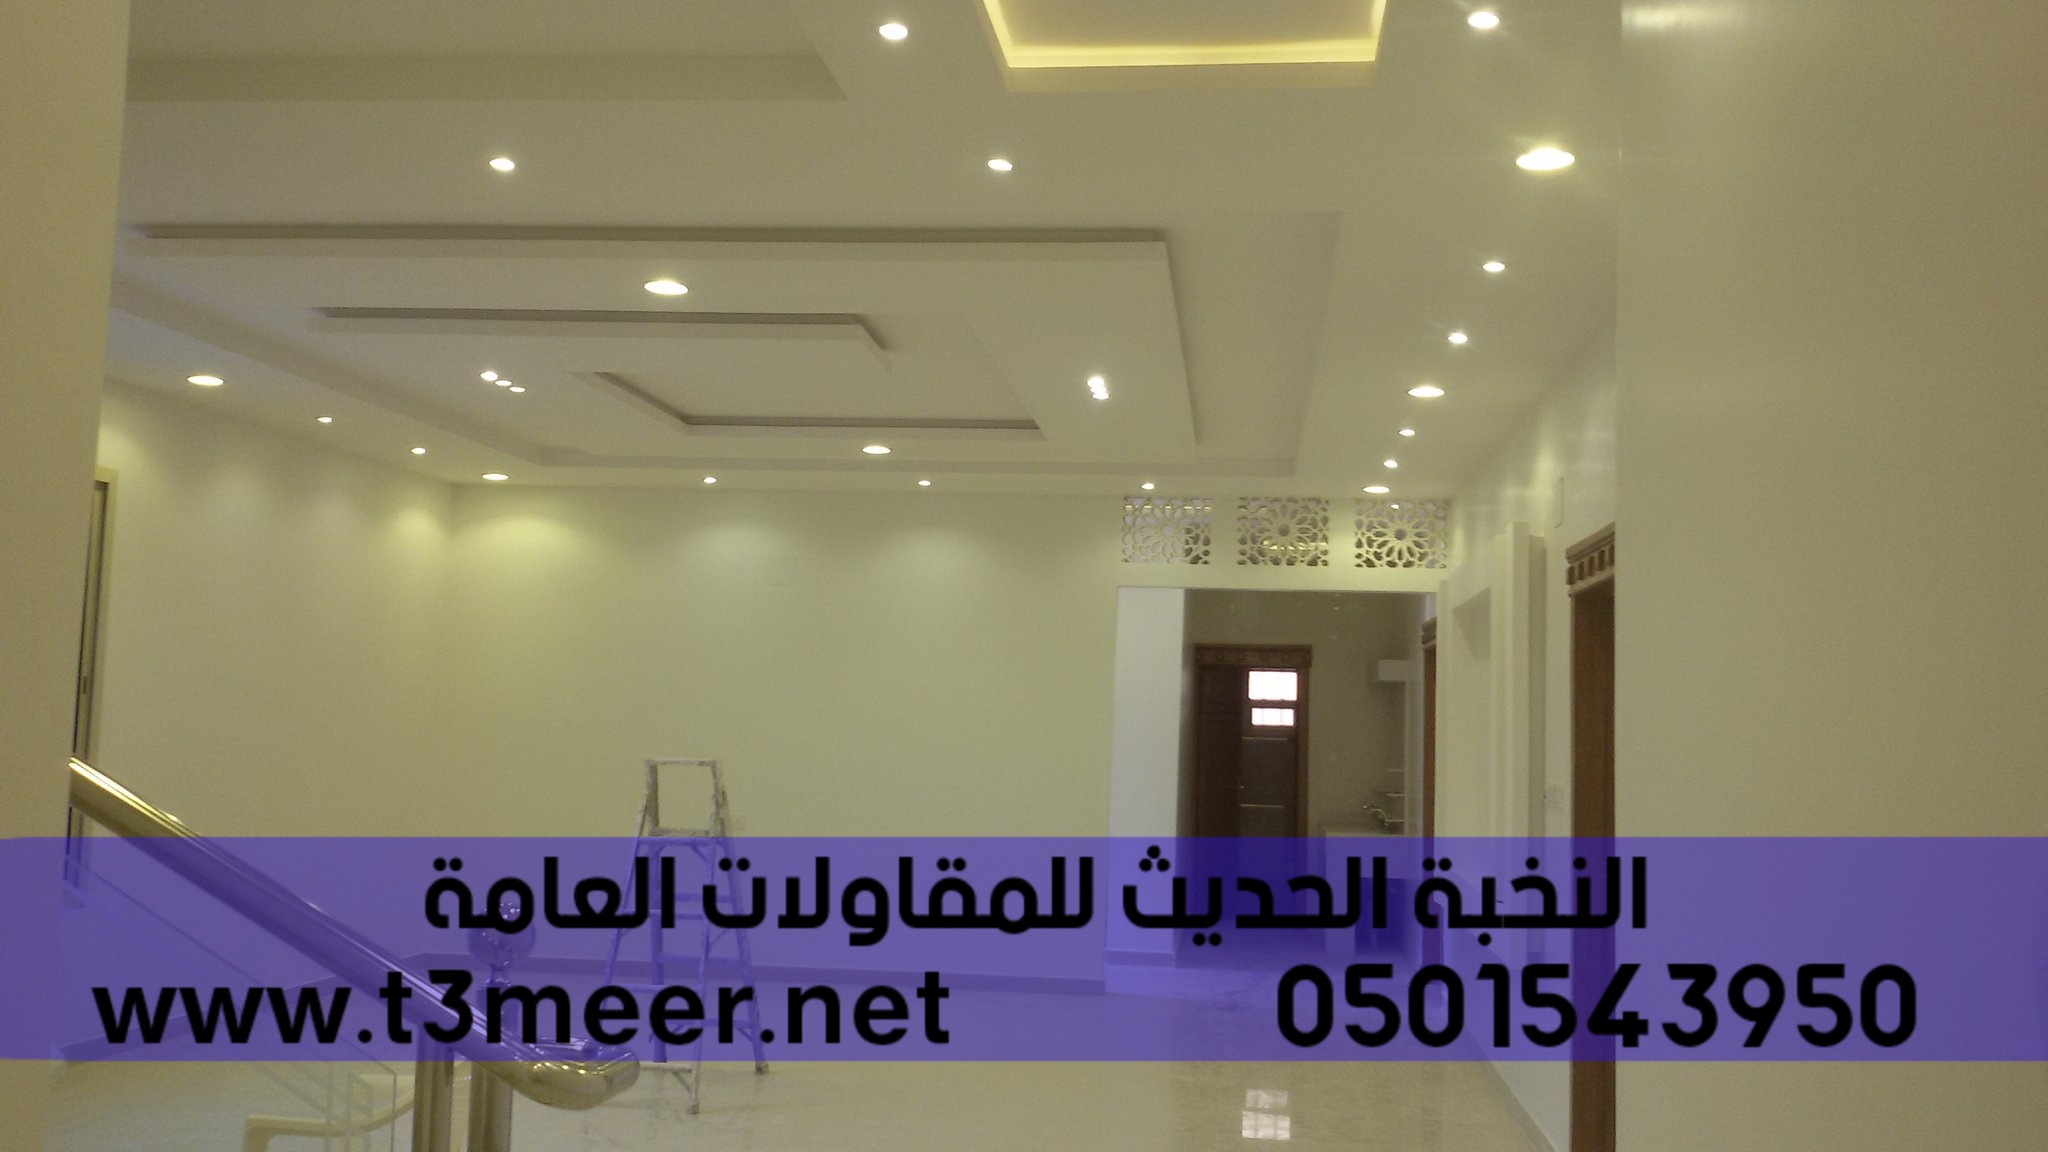 تشطيب منازل و بناء عظم في الرياض , 0501543950 P_2431wtw5g1